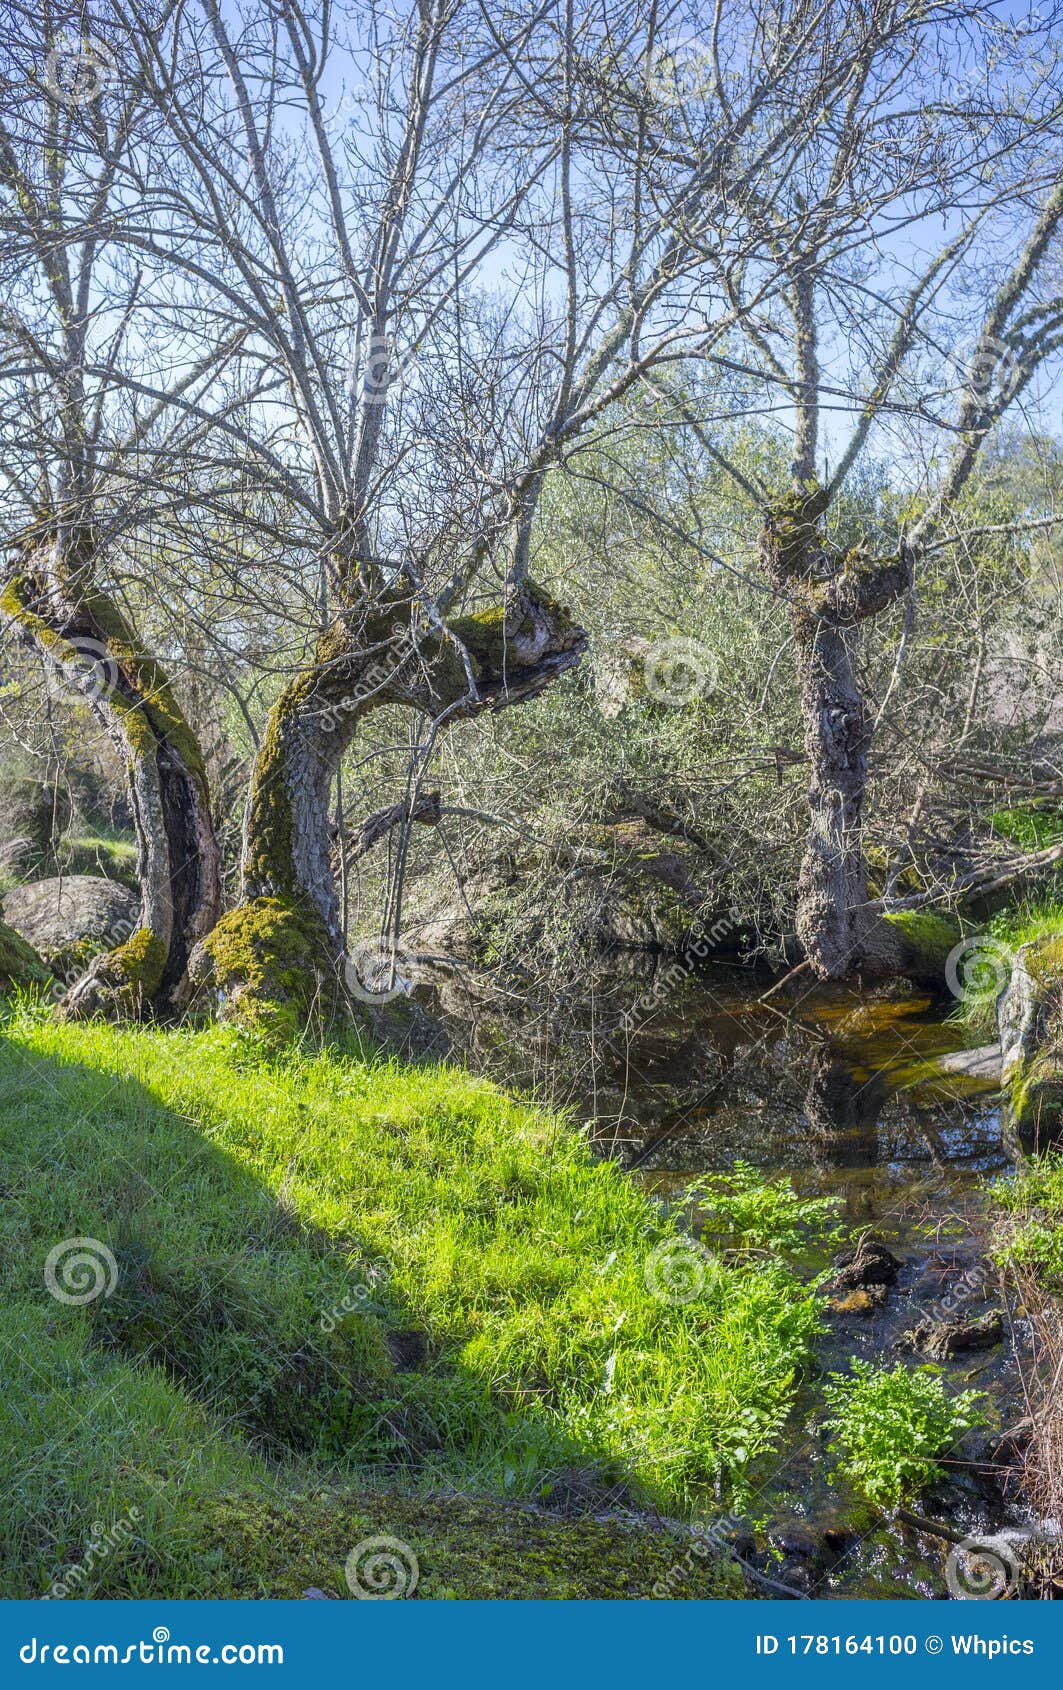 old trees at berrocal of rugidero, cornalvo natural park, extremadura, spain